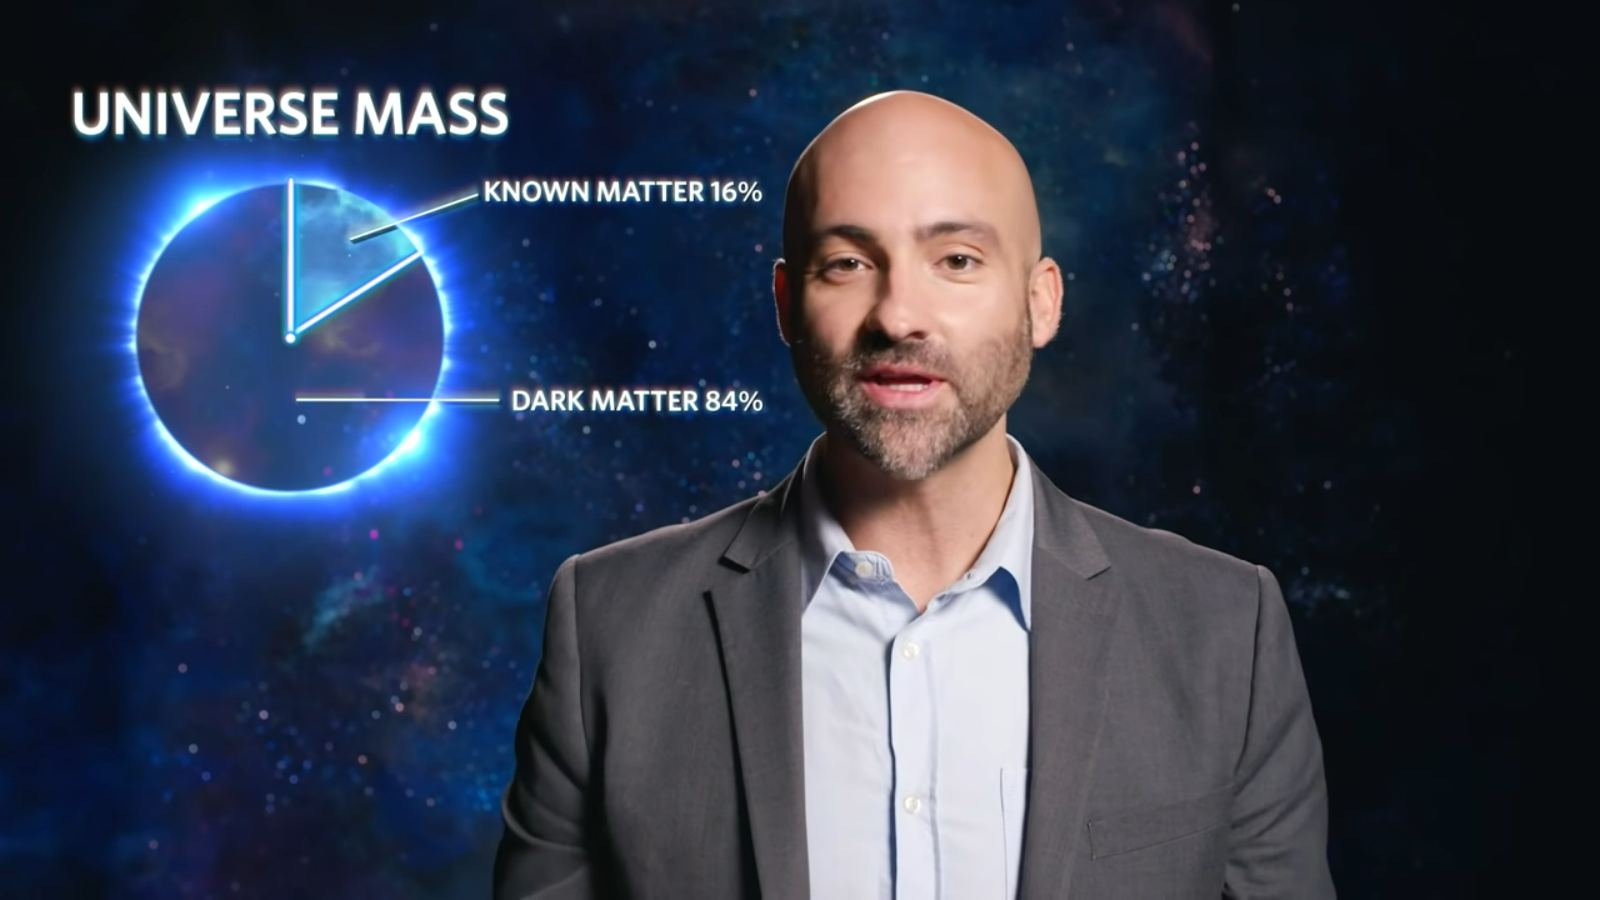 Missing Mass? Not on our Watch—Dr. Paul Sutter Explains Dark Matter